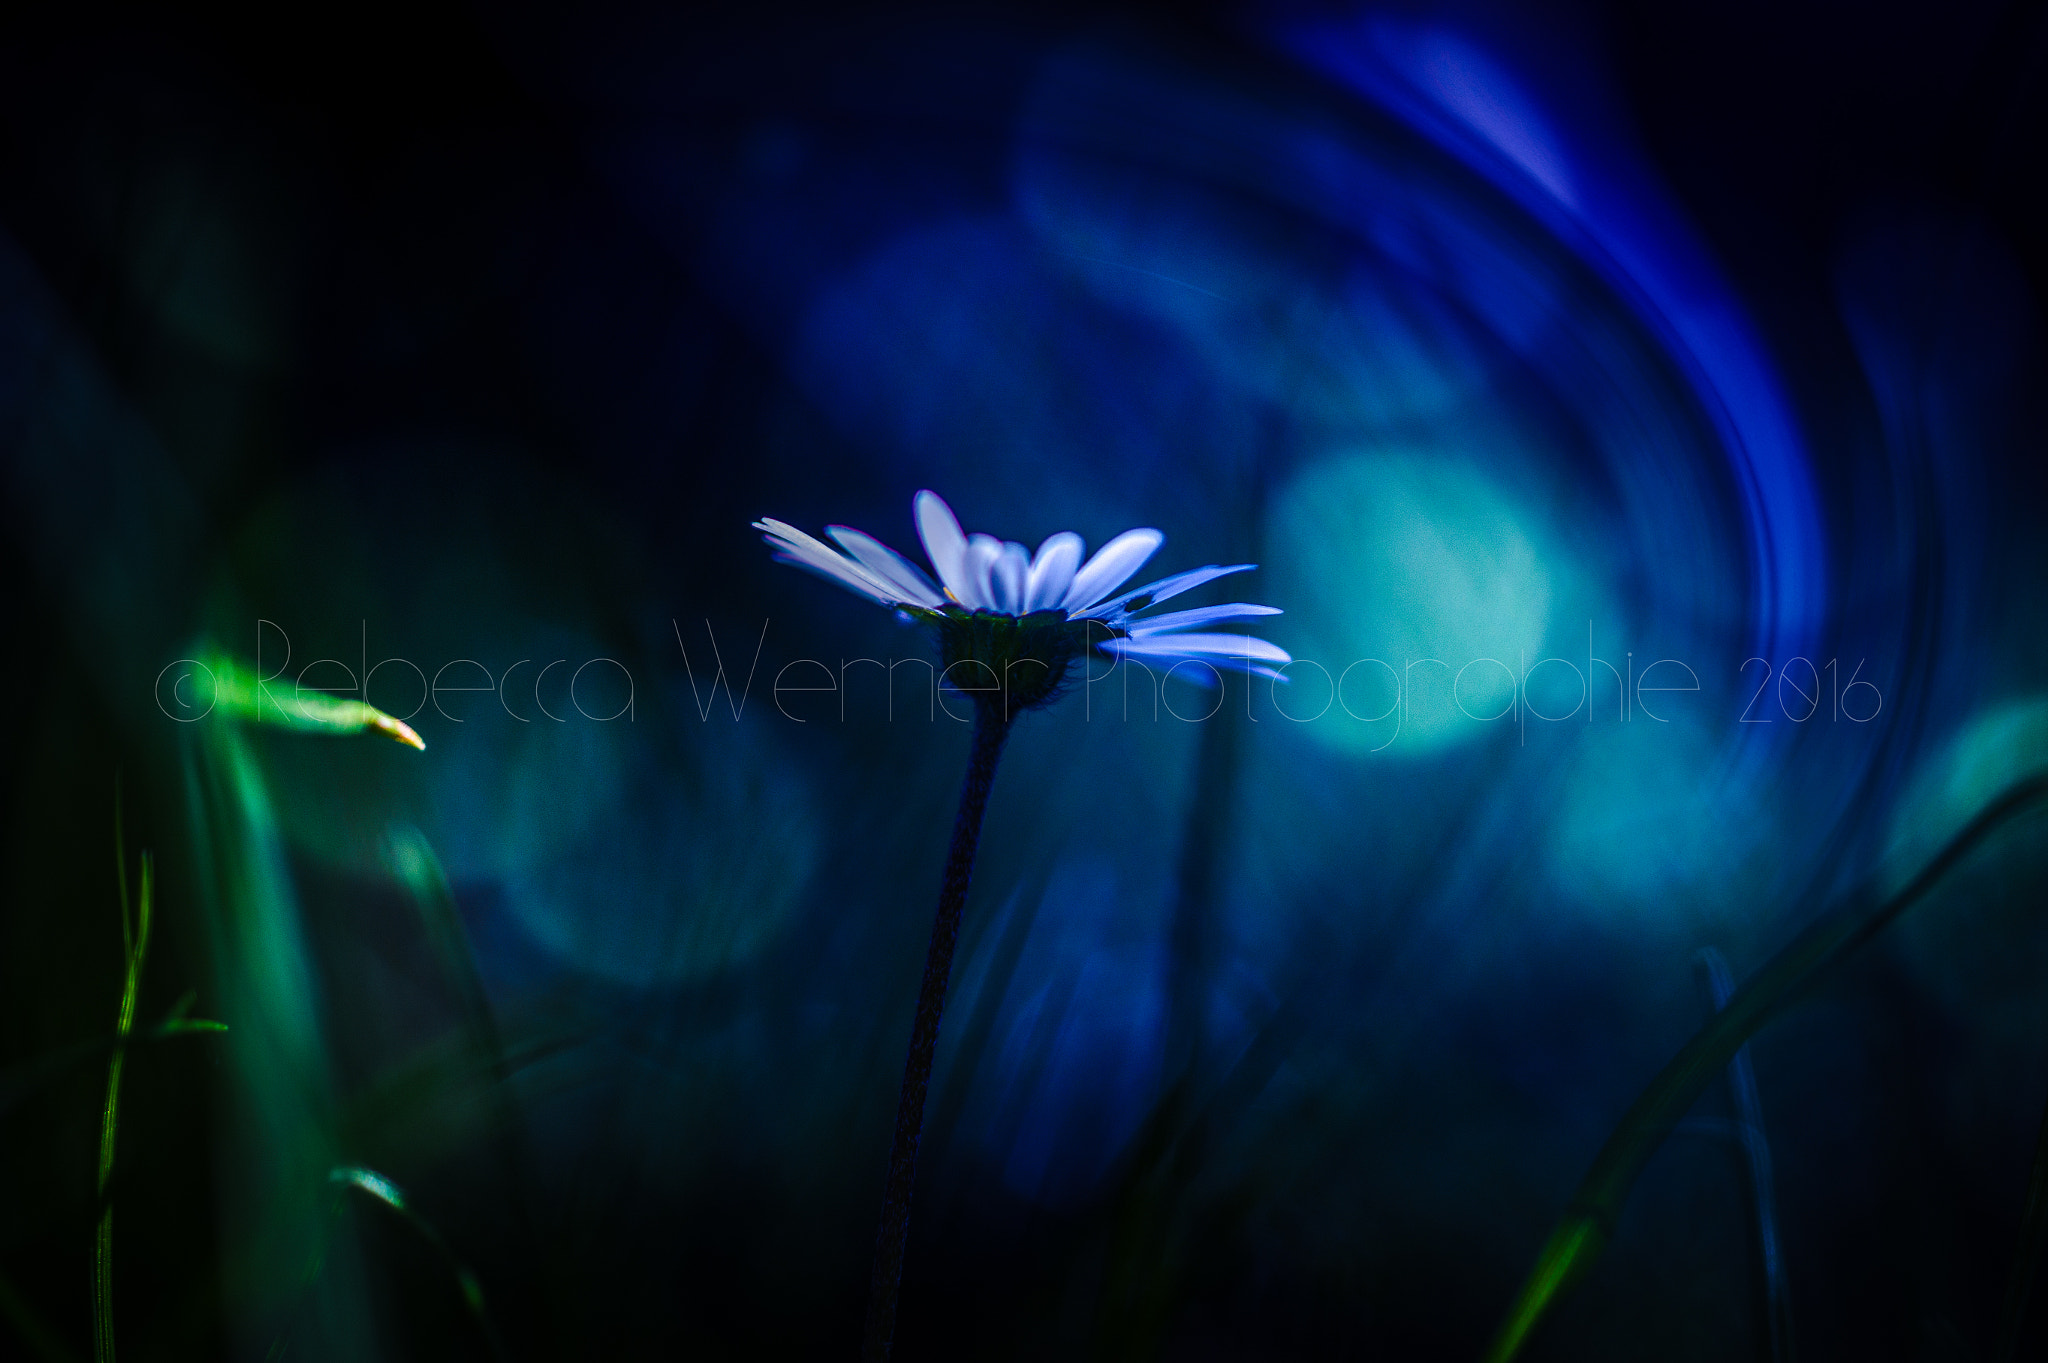 Sony 50mm F2.8 Macro sample photo. Magical daisy photography